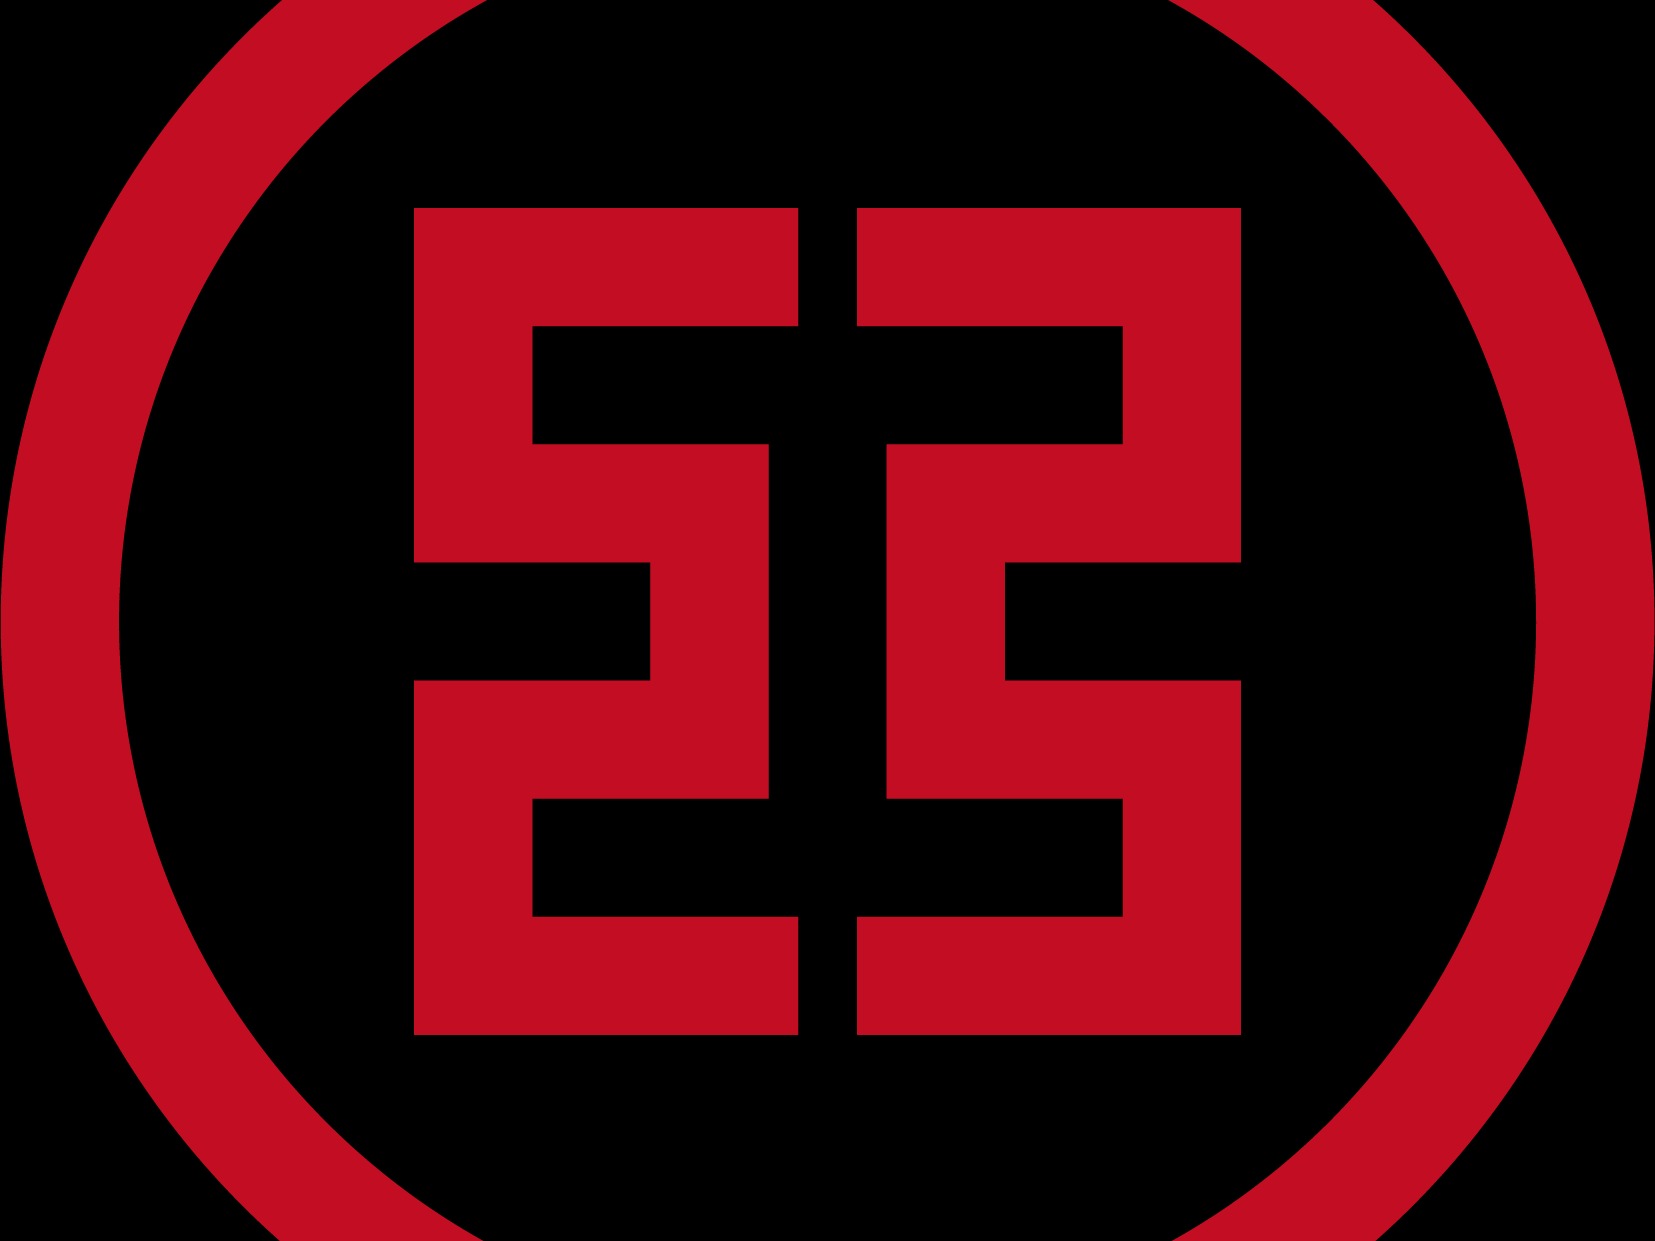 工商银行logo抠图图片